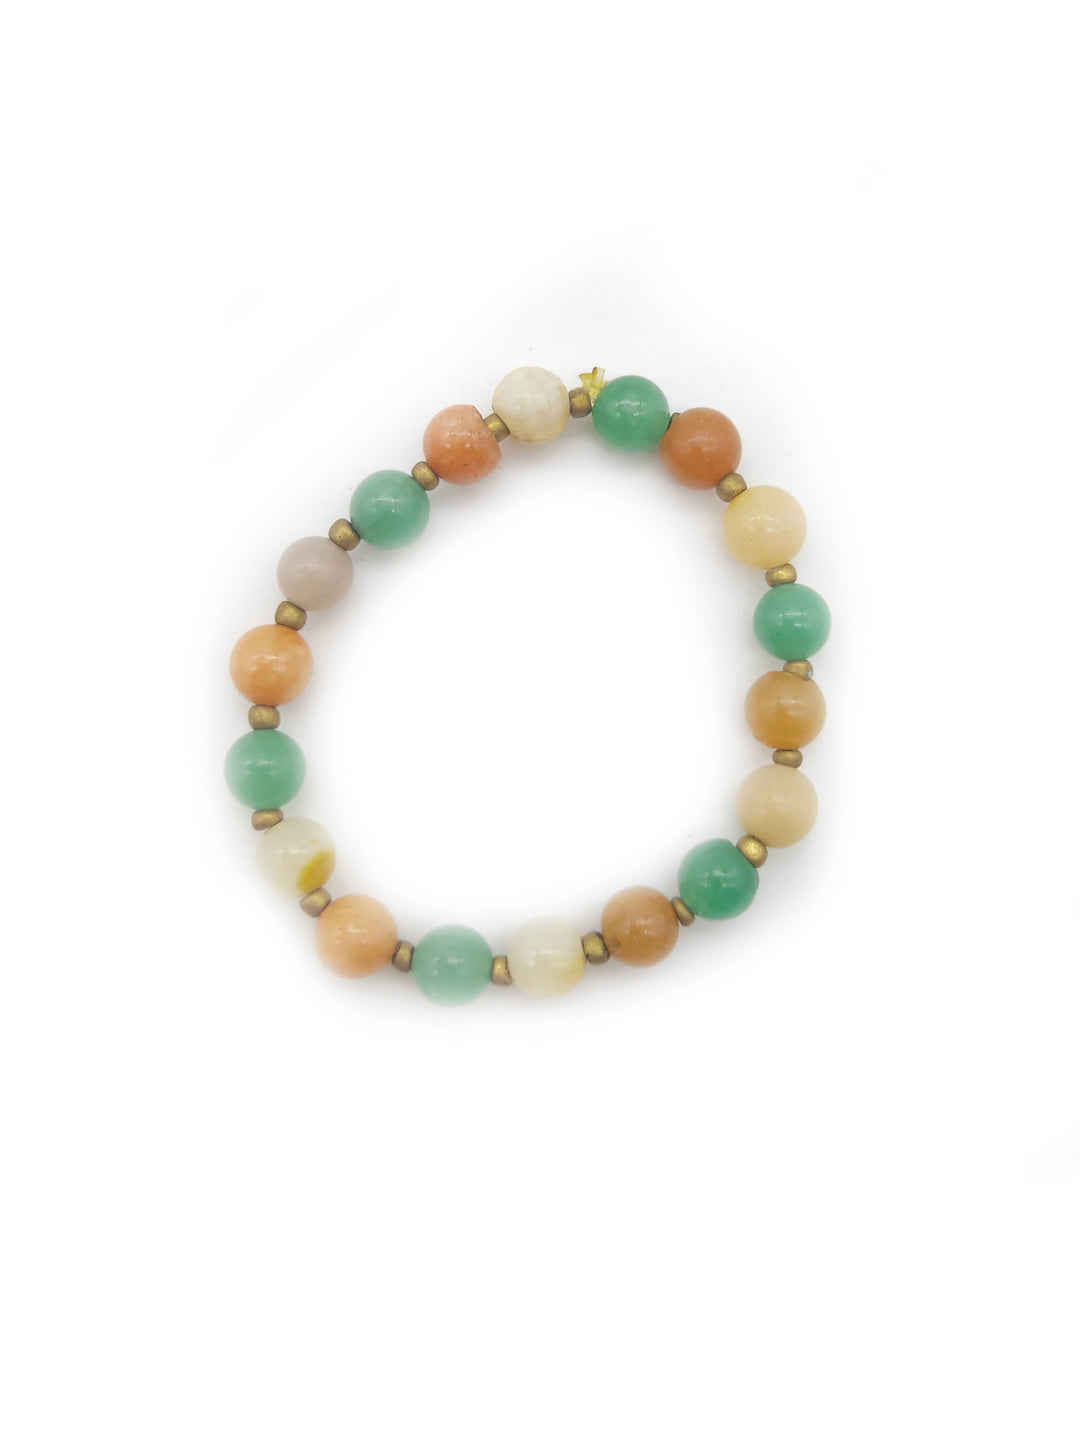 Tricolor handcrafted gemstone bracelet